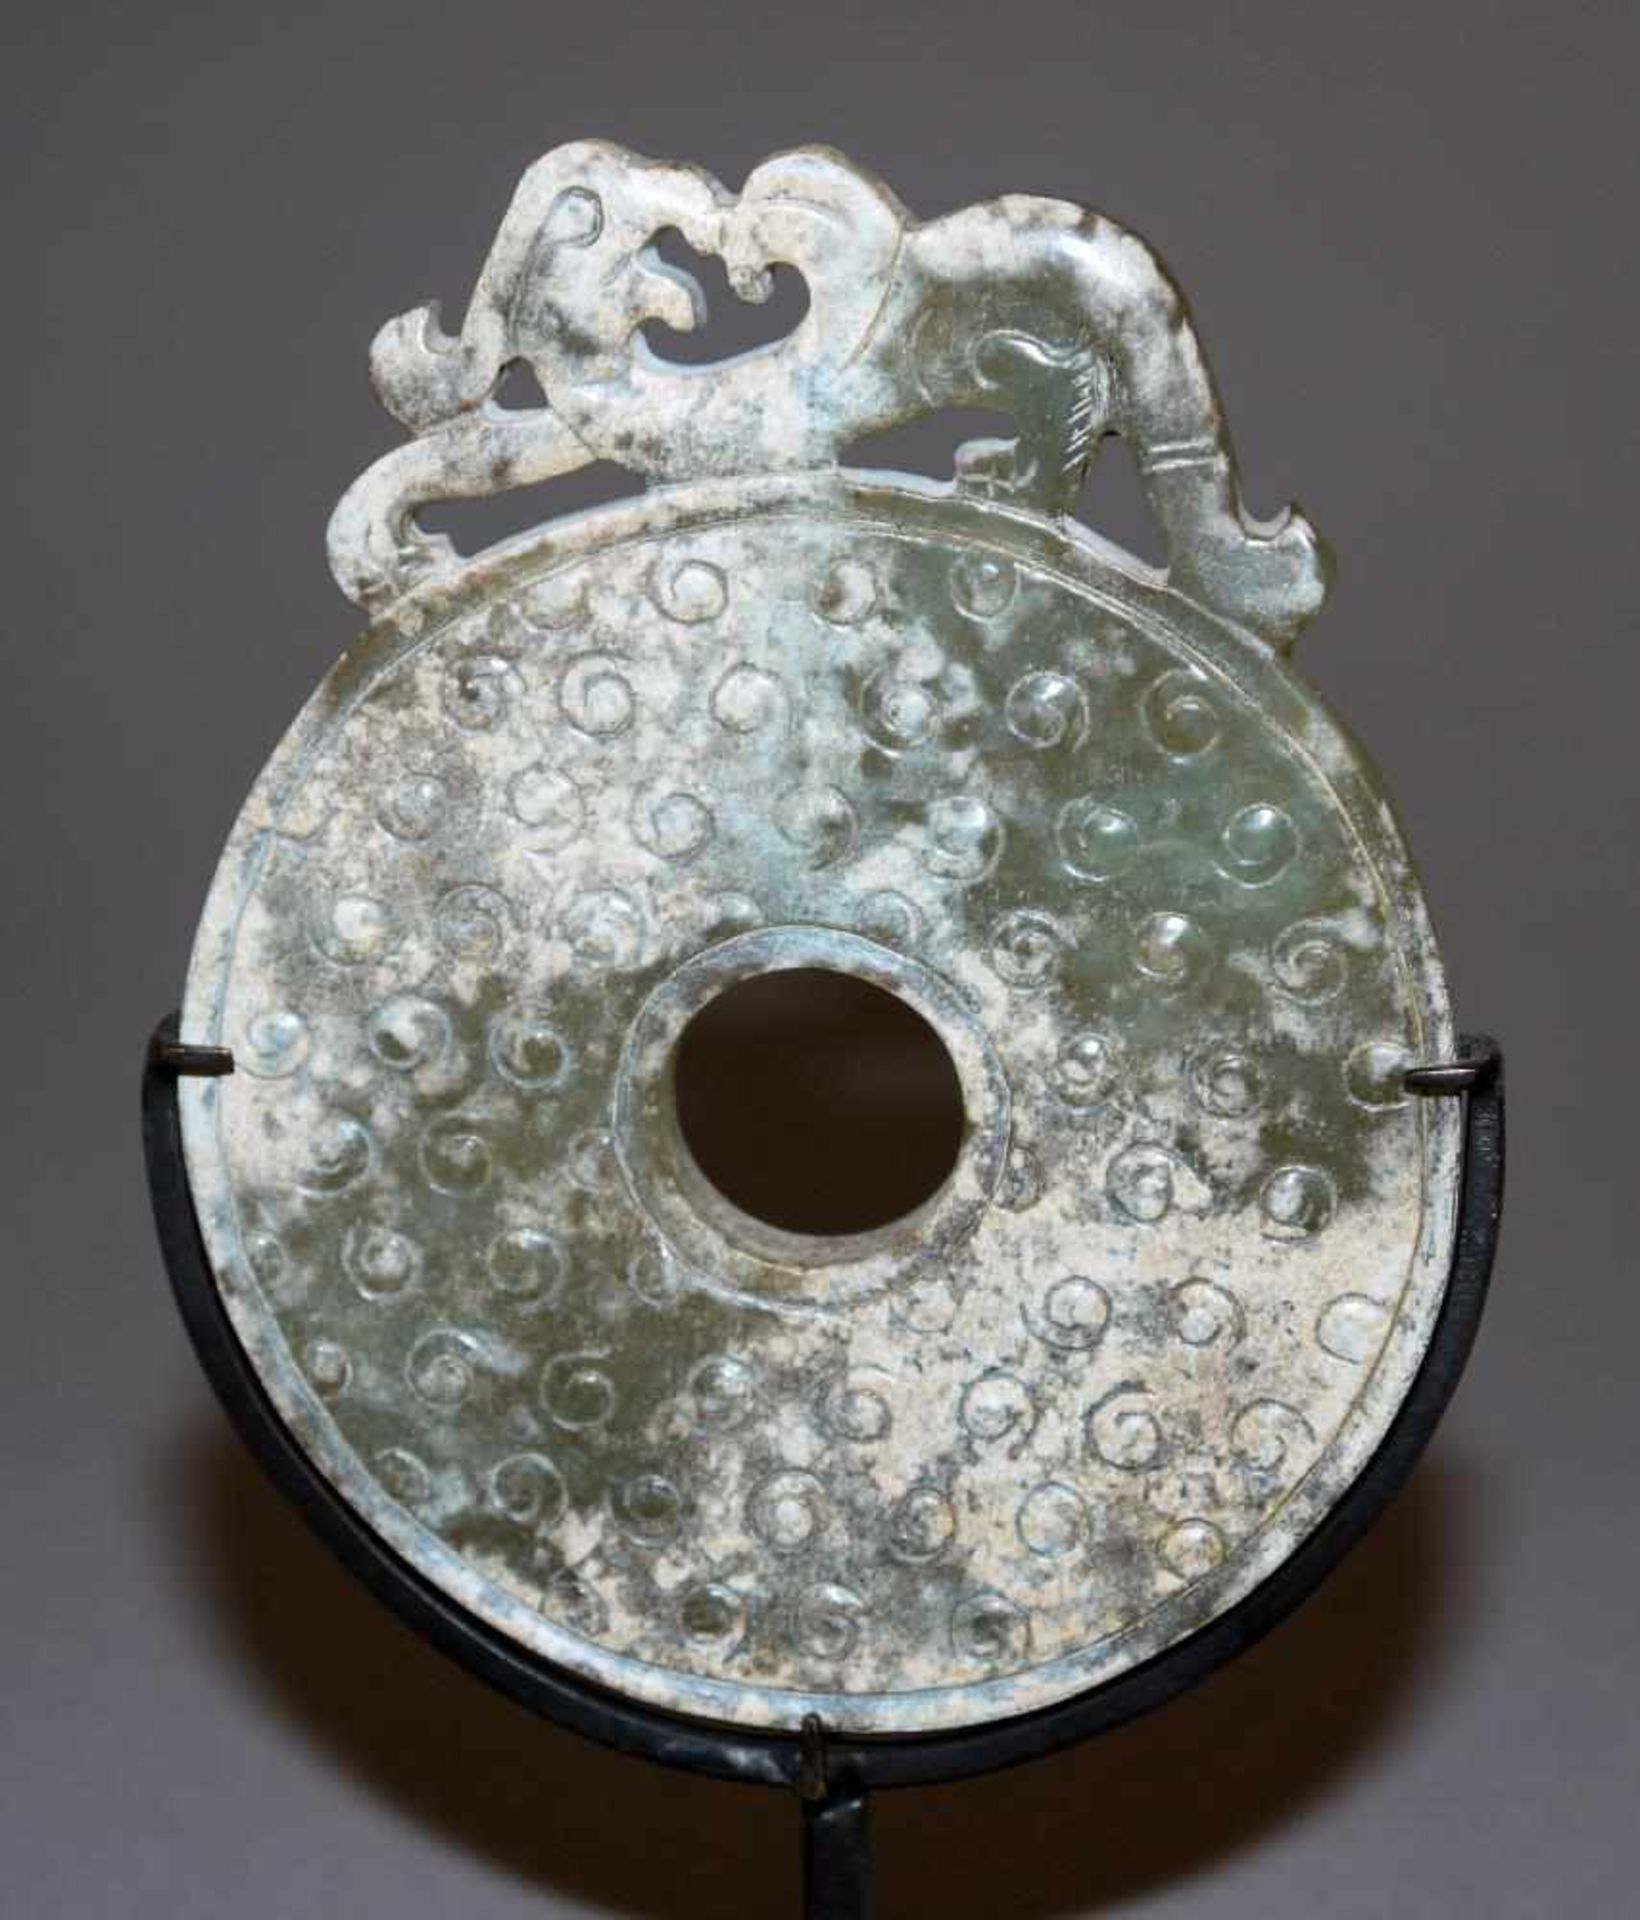 Drachen und Bi-Scheibe aus Jade, wohl Zeit der Streitenden Reiche, China 5. – 3. Jh. v. Chr. Drachen - Image 2 of 4